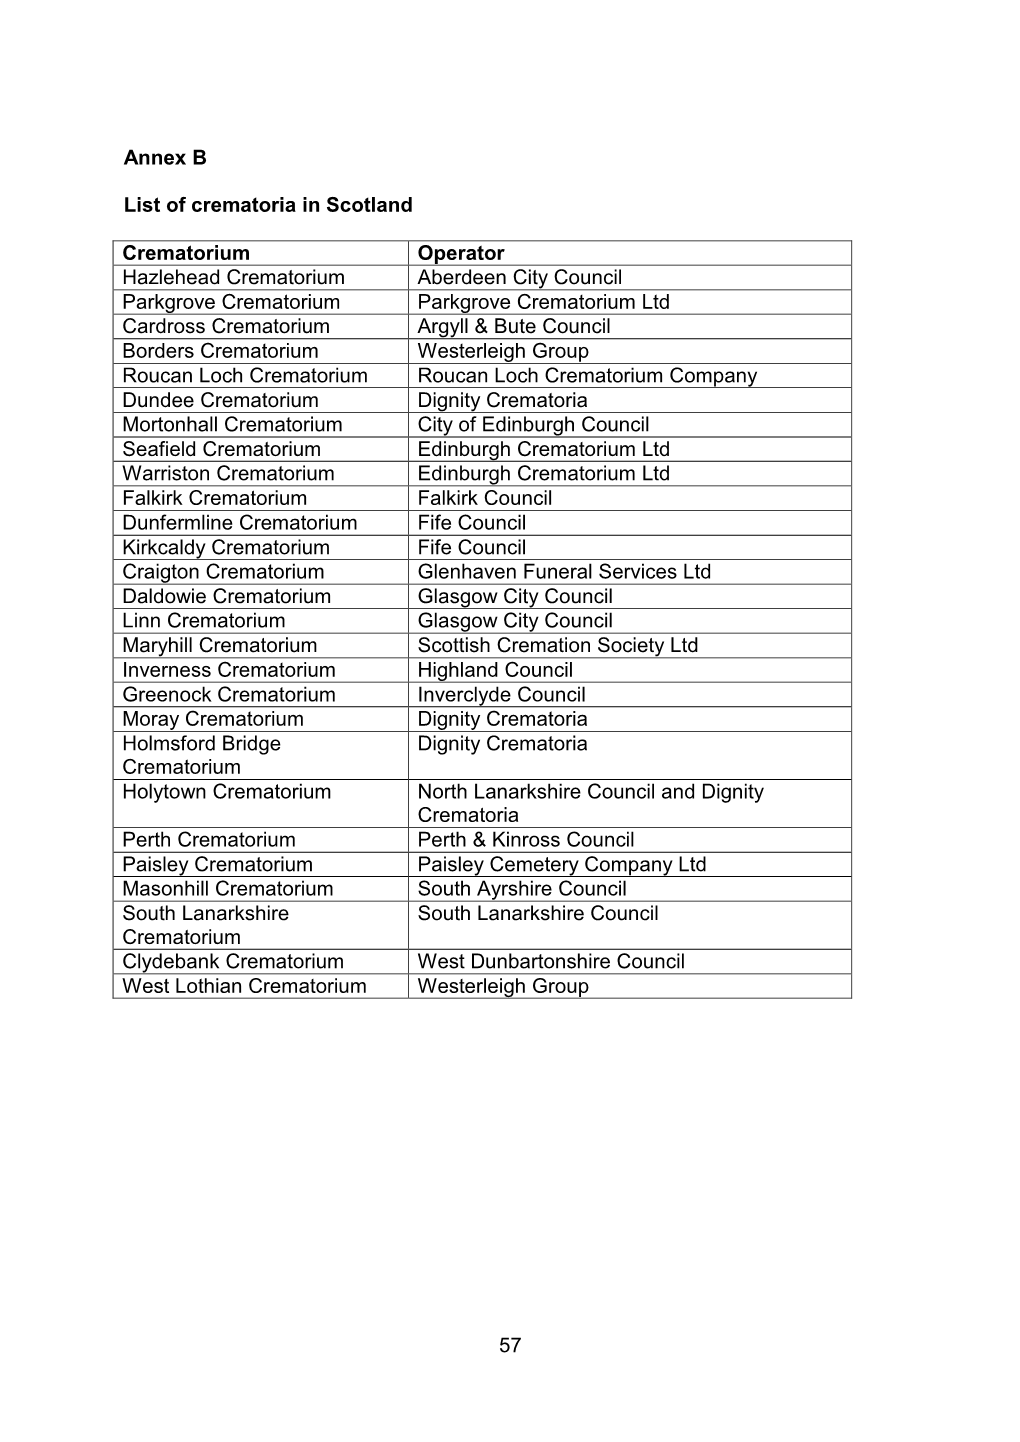 57 Annex B List of Crematoria in Scotland Crematorium Operator